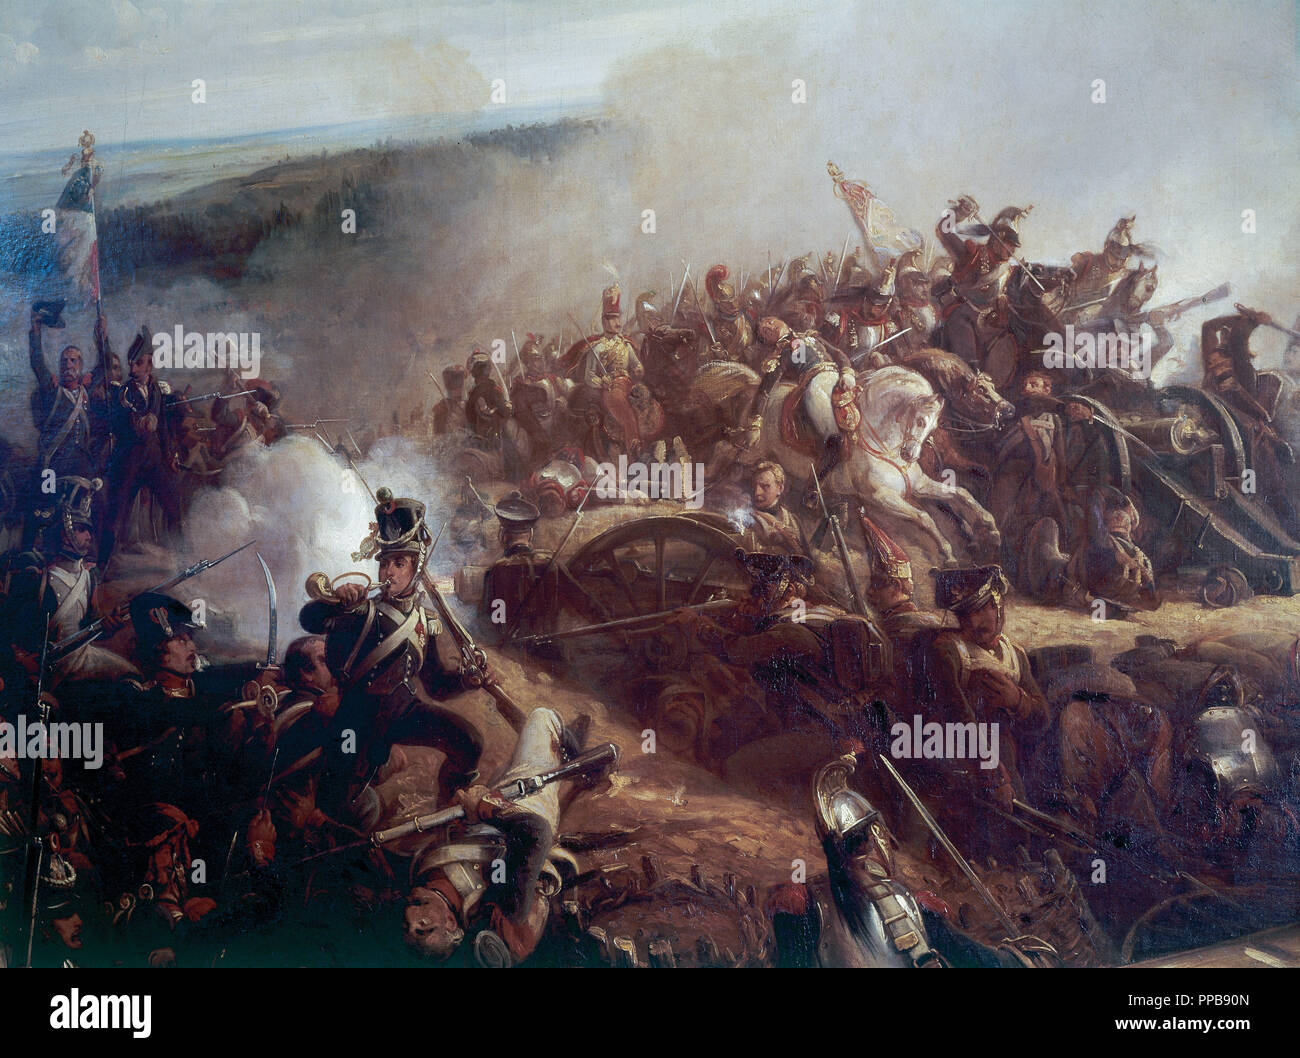 Napoleonischen Kriege. Russische Kampagne. Schlacht von Borodino (7. September 1812) zwischen französischen und russischen Truppen. Öl von Charpentier. Stockfoto